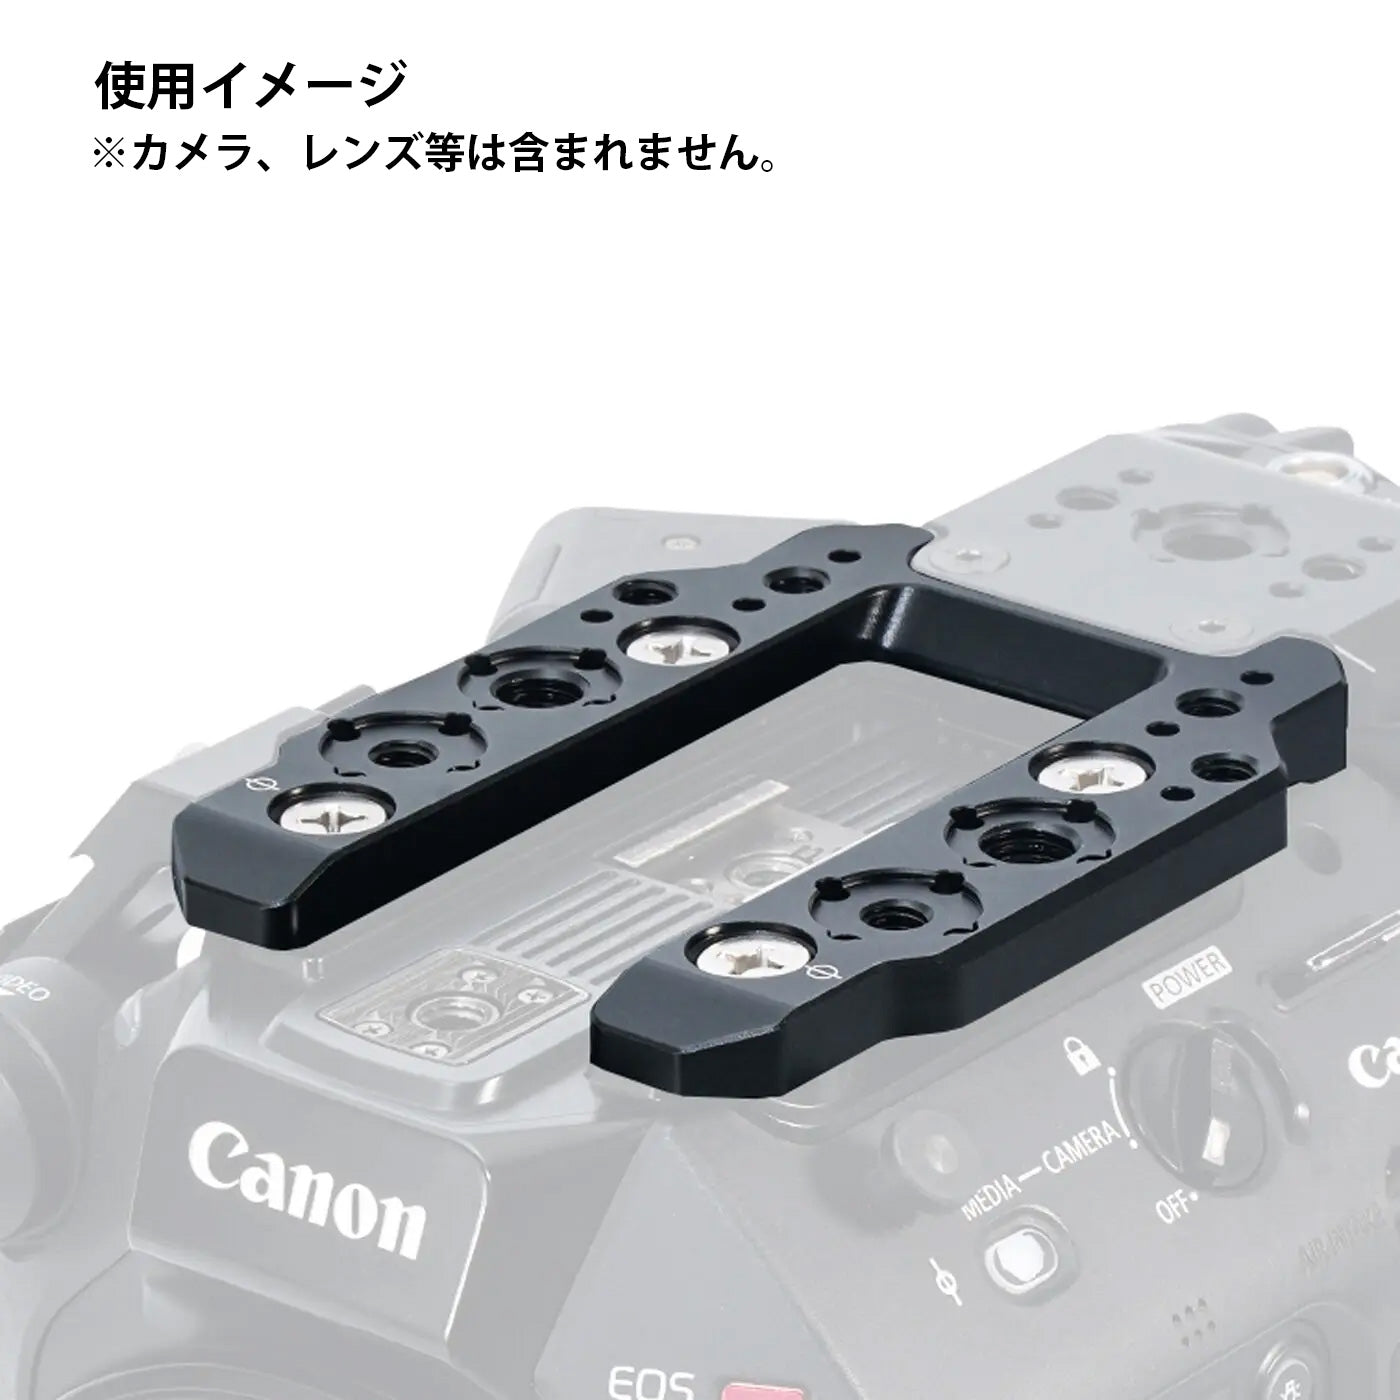 TILTA(ティルタ) Camera Cage for Canon C500 Mk II/C300 Mk III Kit C - Gold Mount(アントンマウント) ES-T19-C-AB